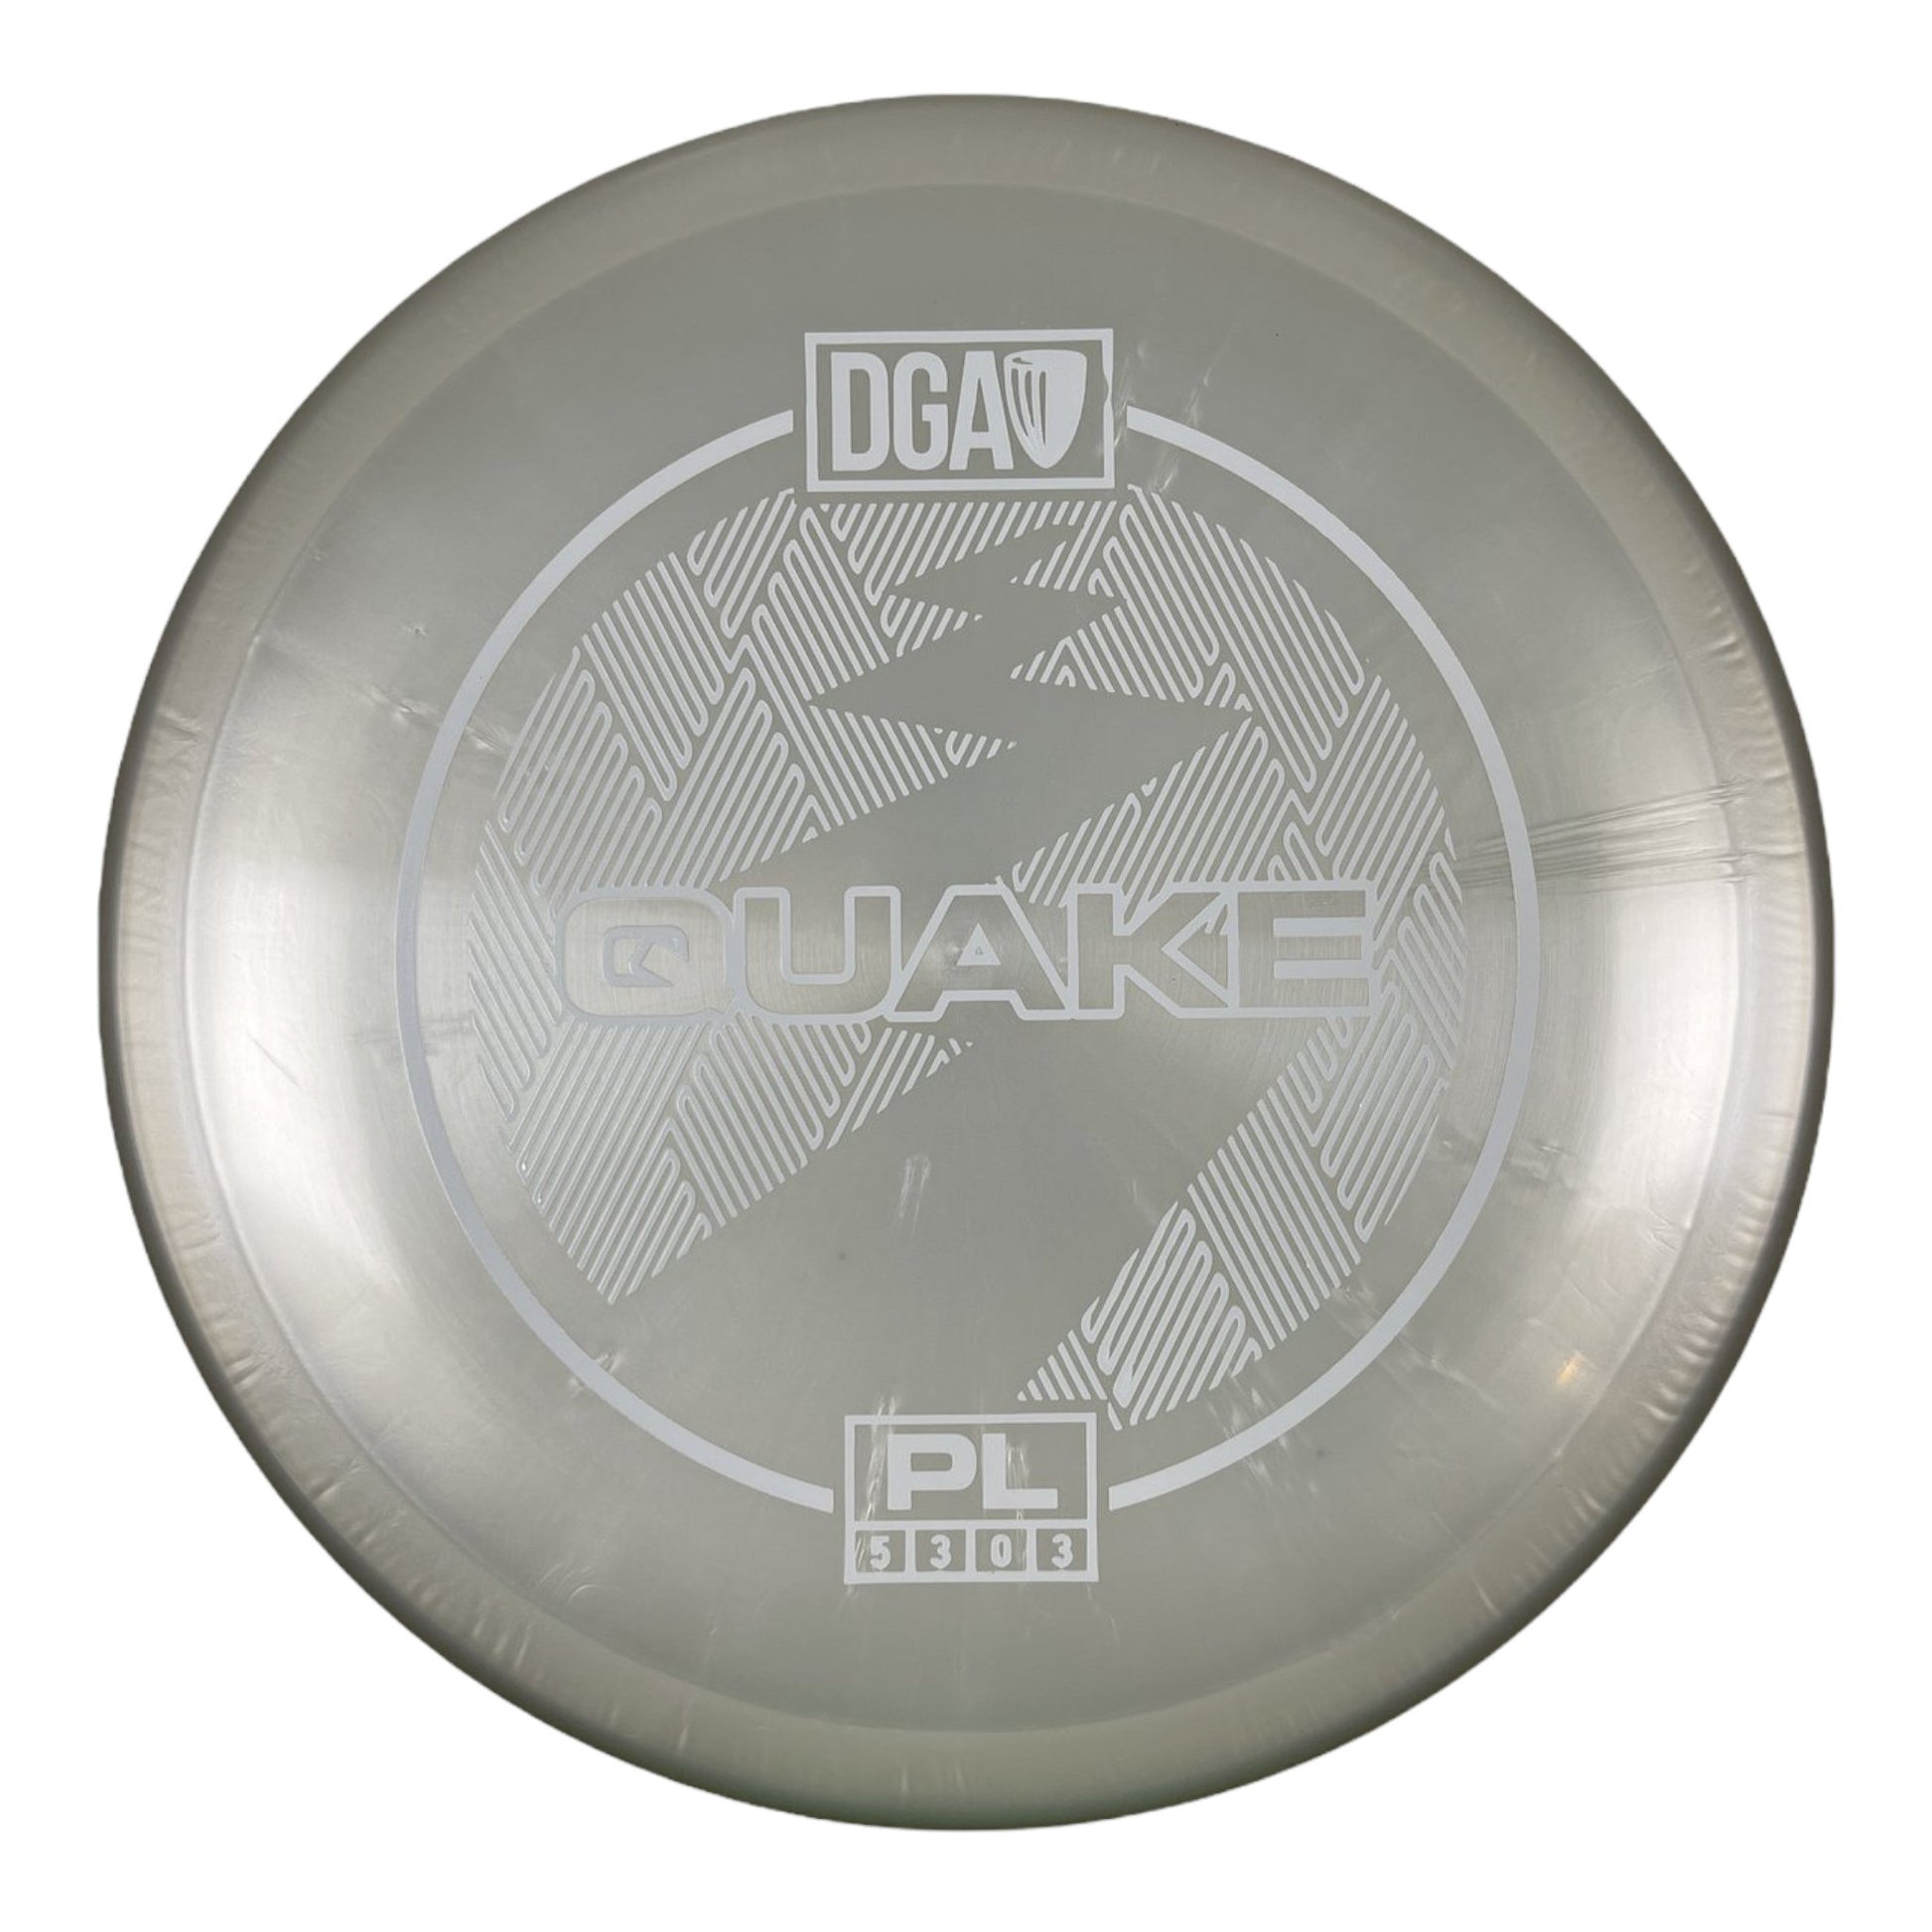 DGA Quake | PL | White/White 170g Disc Golf